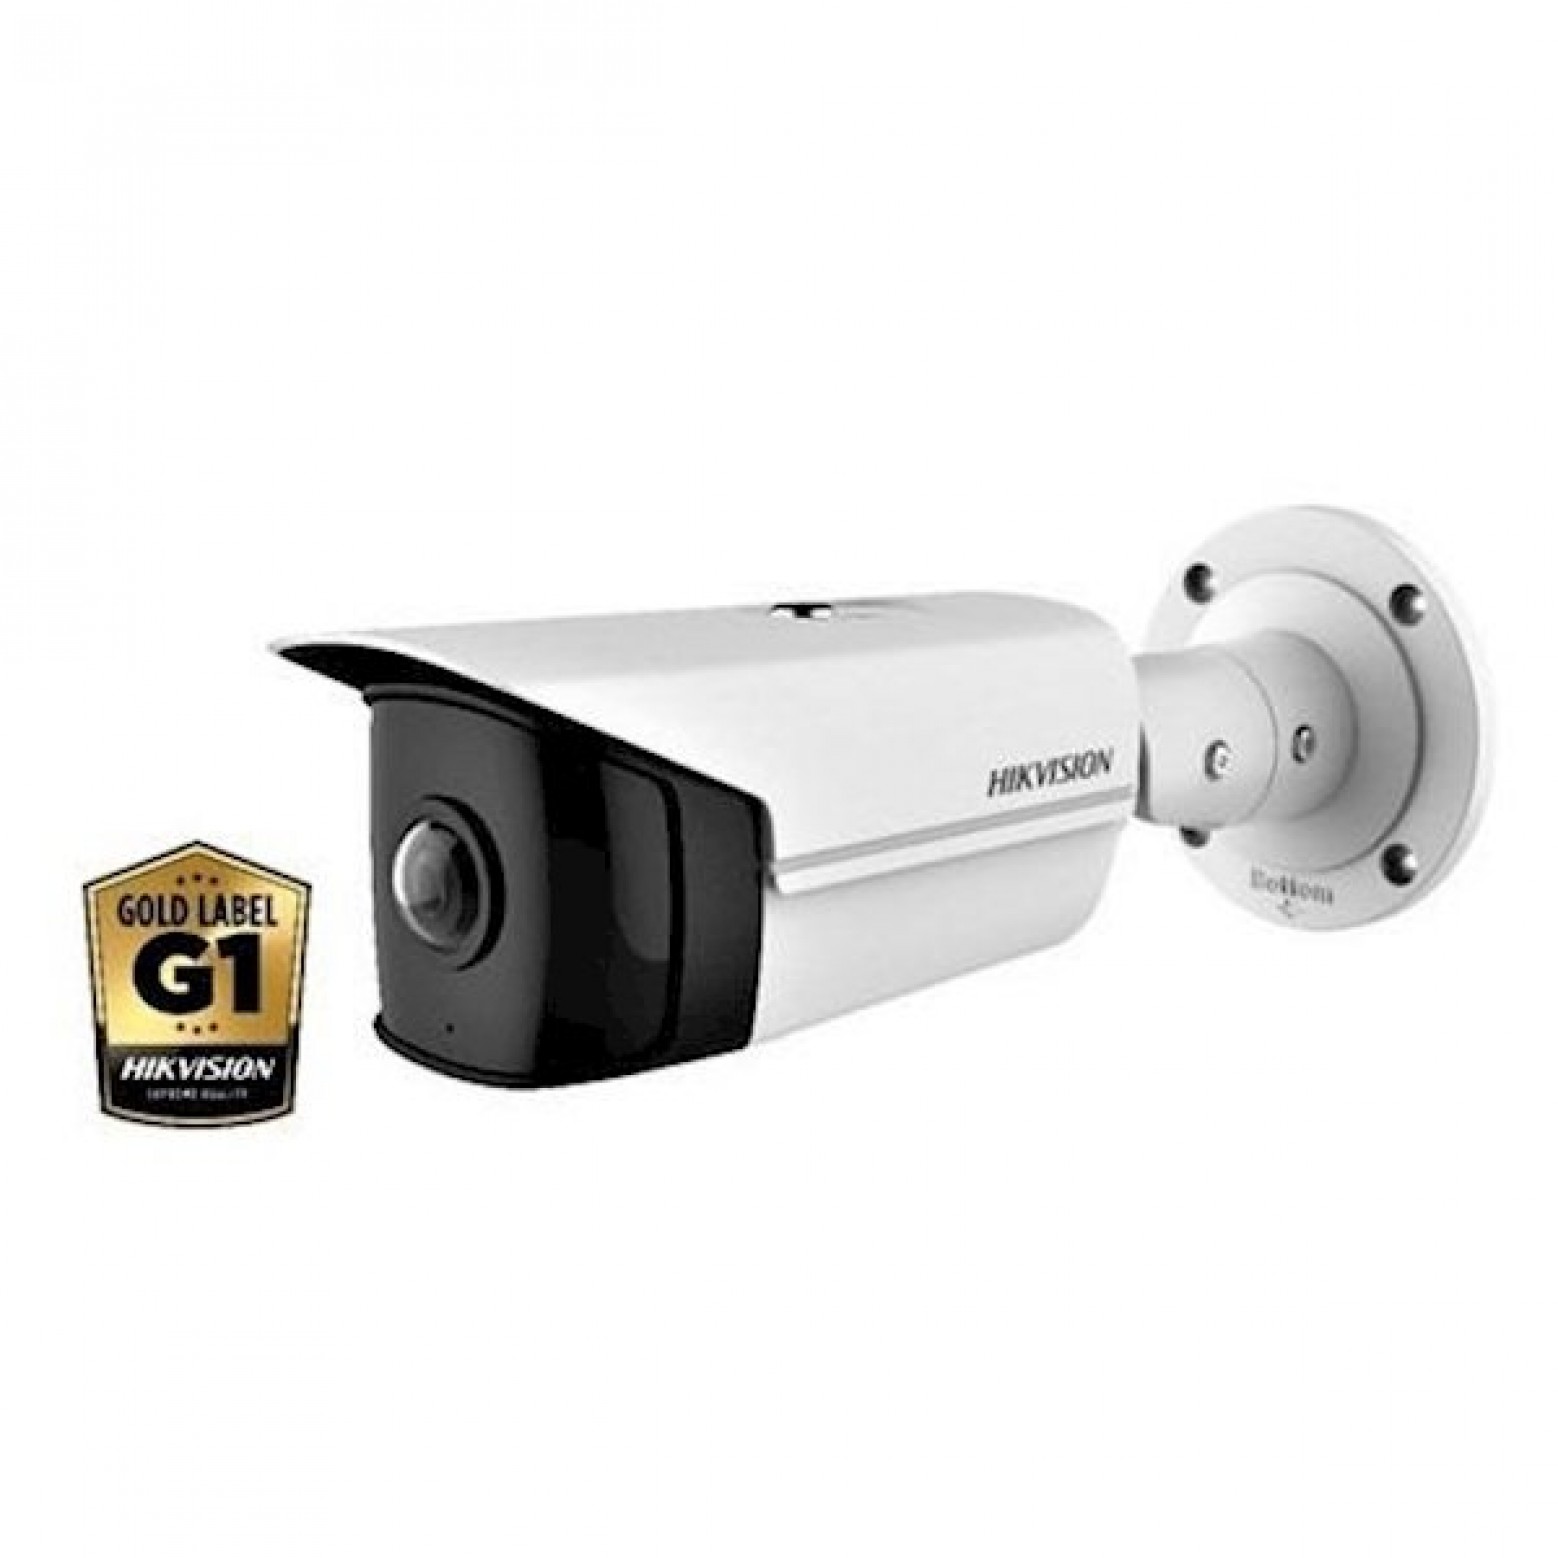 Hikvision DS-2CD2T45G0P-I, 4MP, 30m IR, WDR, Ultra Low Light, 180° Bullet Camera